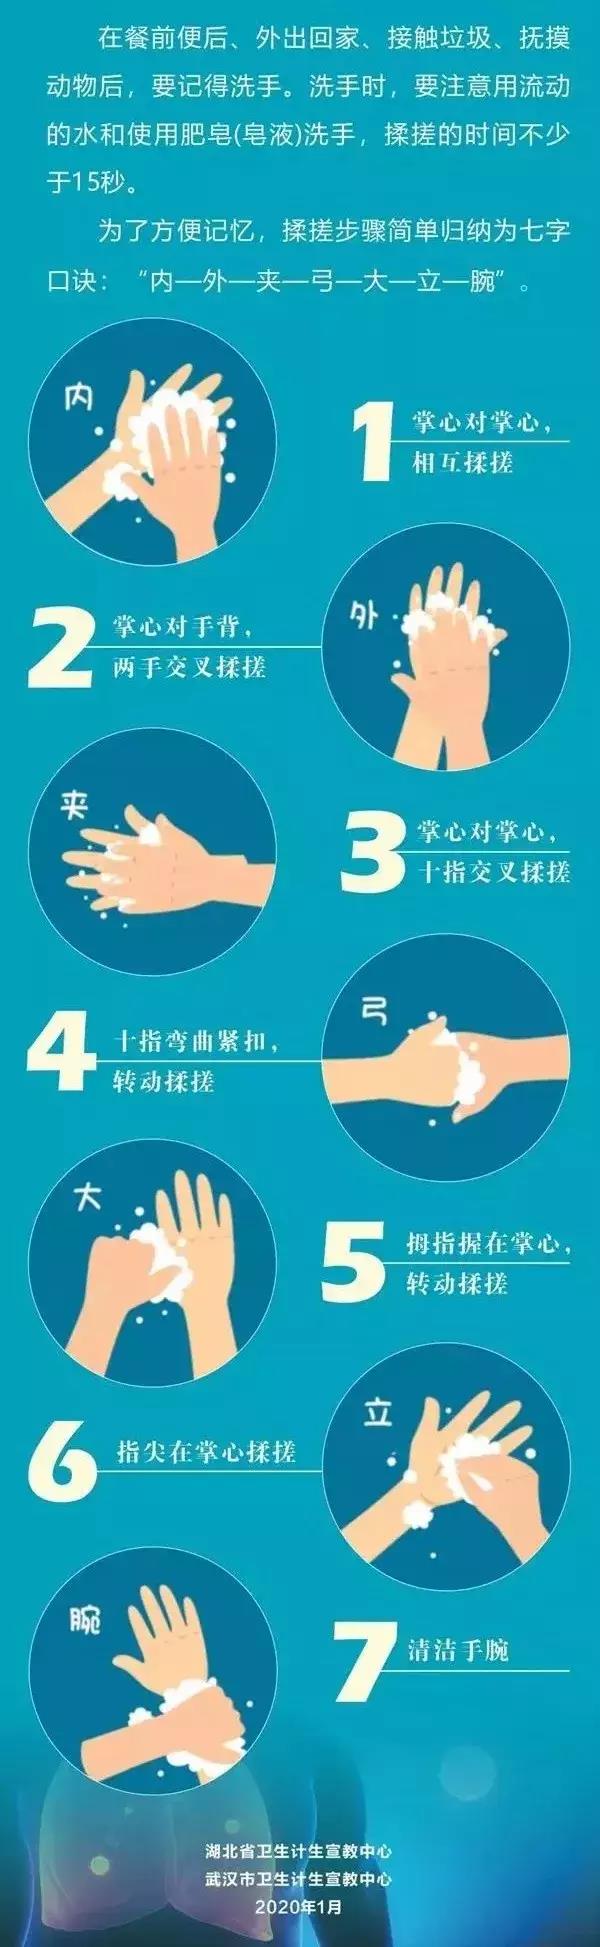 一张图告诉你如何正确洗手↓.jpg